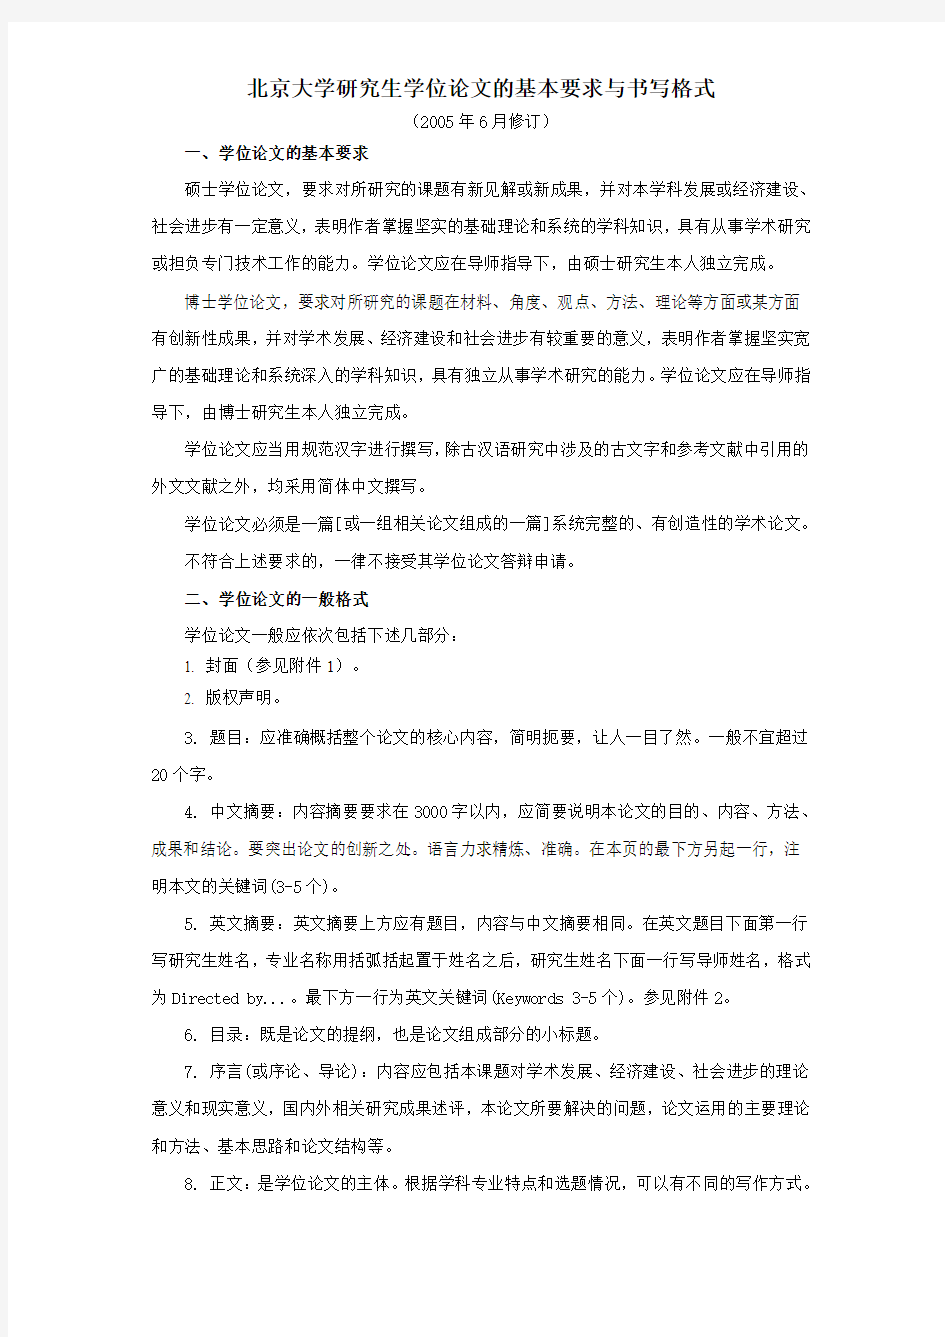 北京大学研究生学位论文的基本要求与书写格式 - 北京大学哲学系